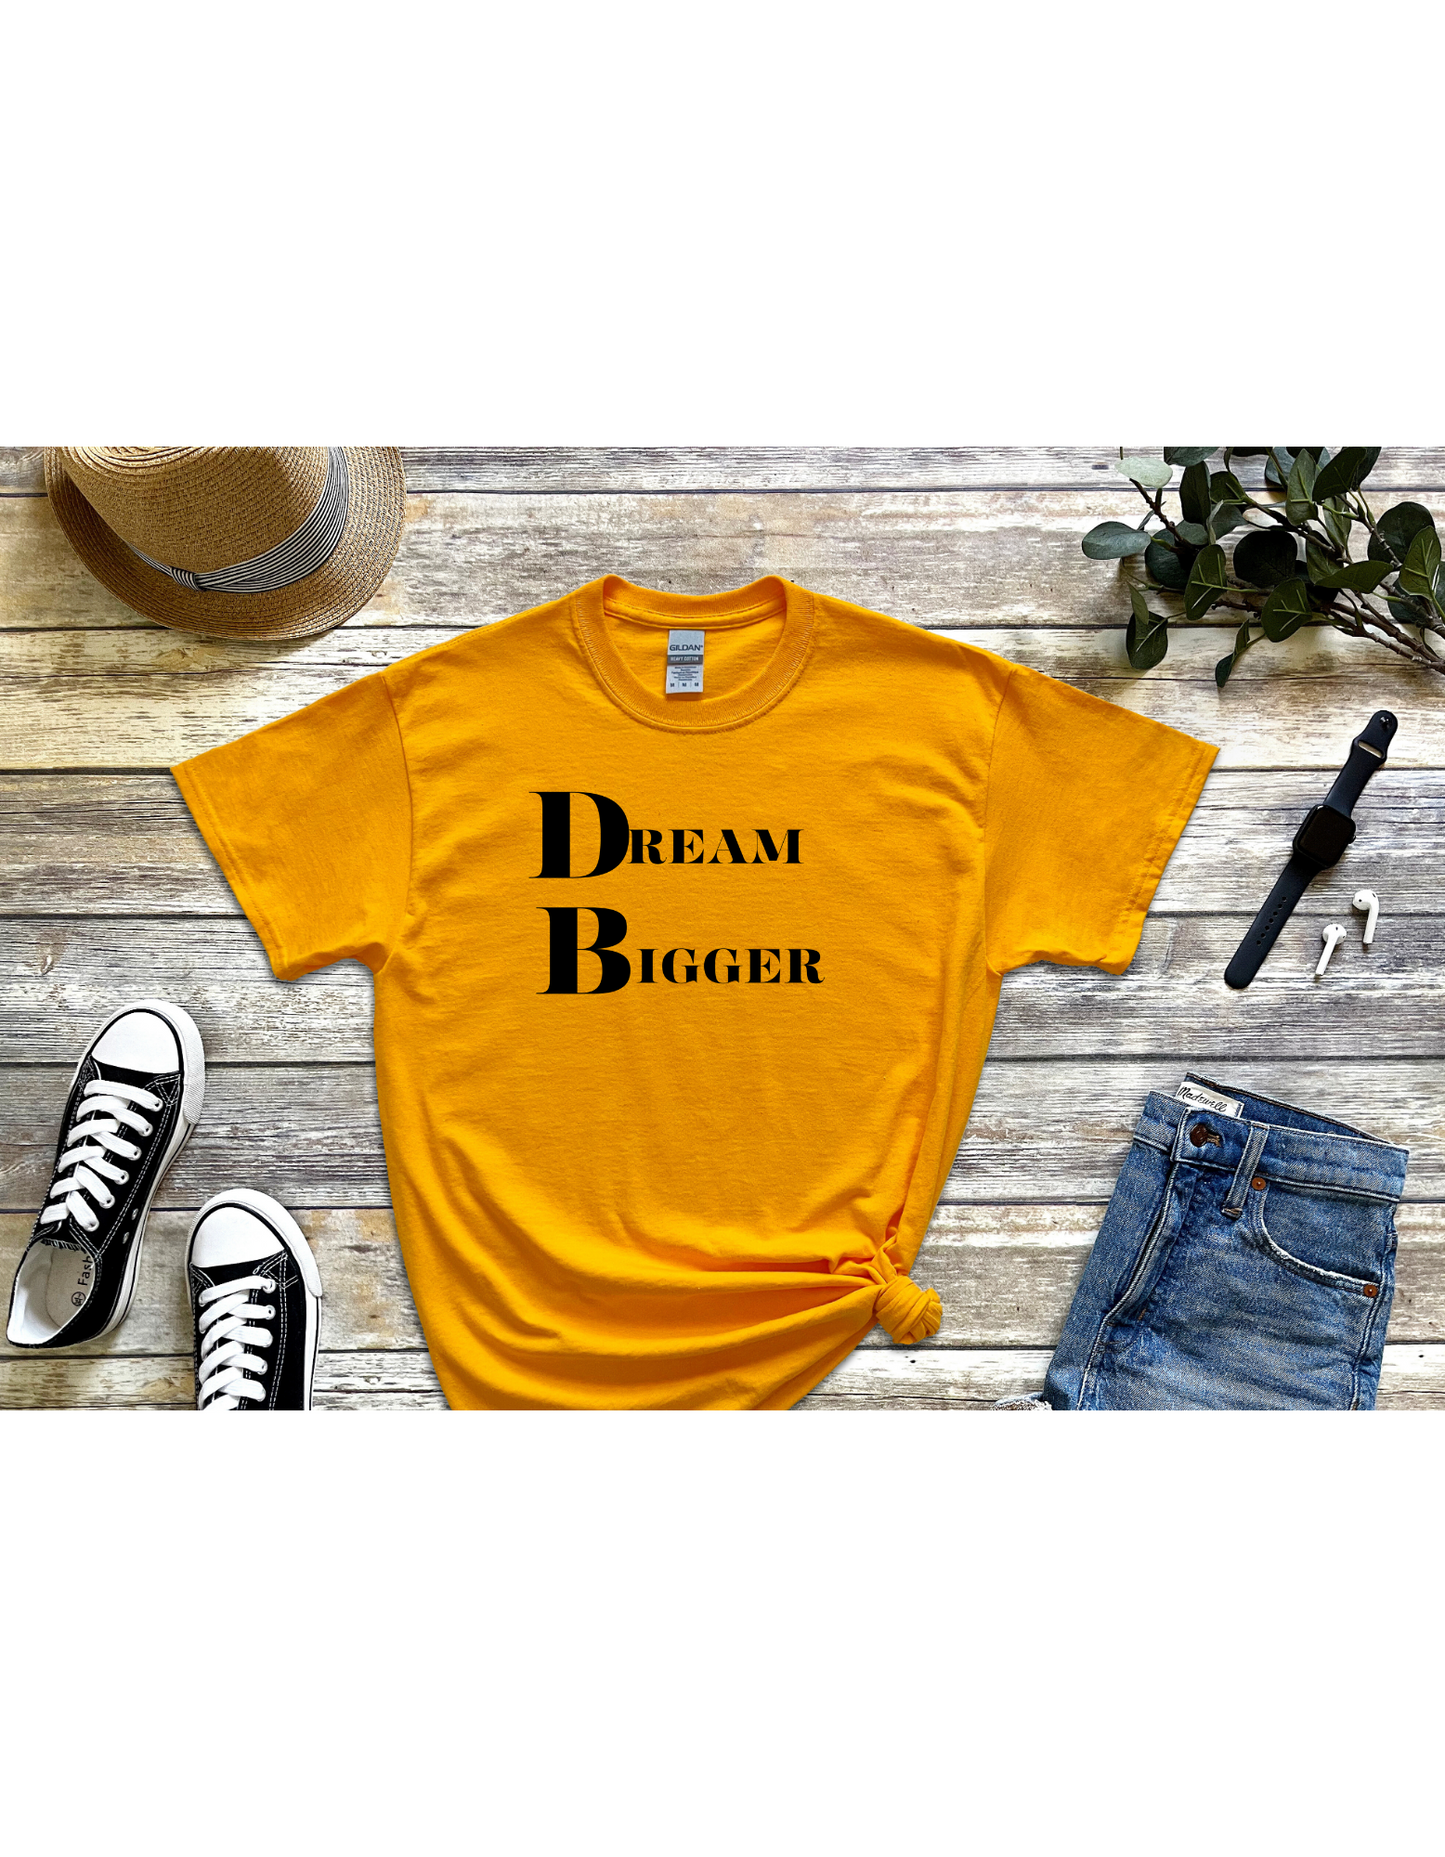 Dream Bigger Motivational Tee, Inspirational T-Shirt, Dream Shirt